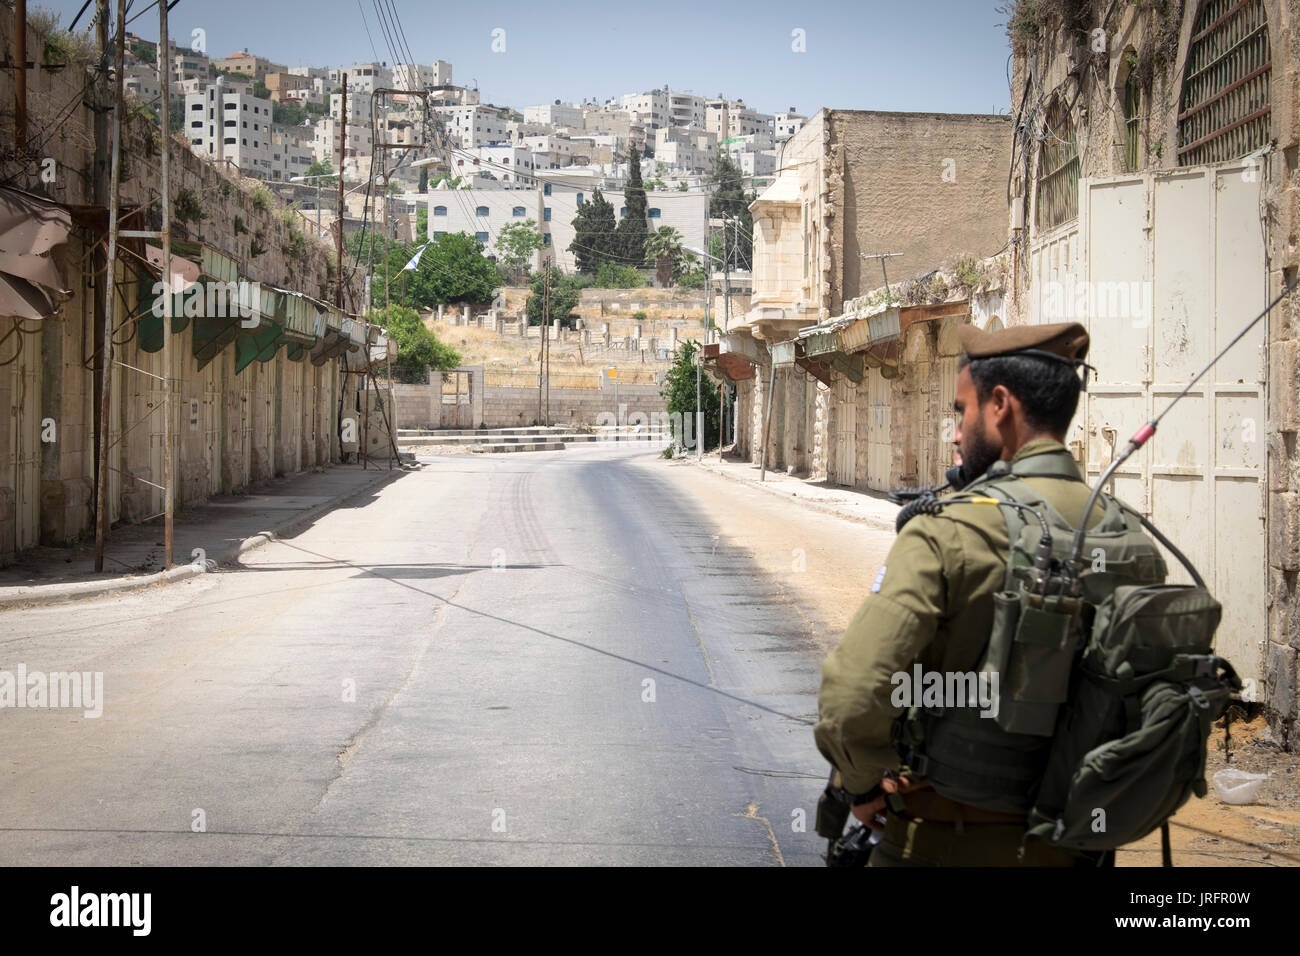 Soldato israeliano a guardia di un ex bustiling Hebron Market street ora chiusa ai palestinesi a causa di una terra grab di 850 coloni israeliani nelle vicinanze Foto Stock